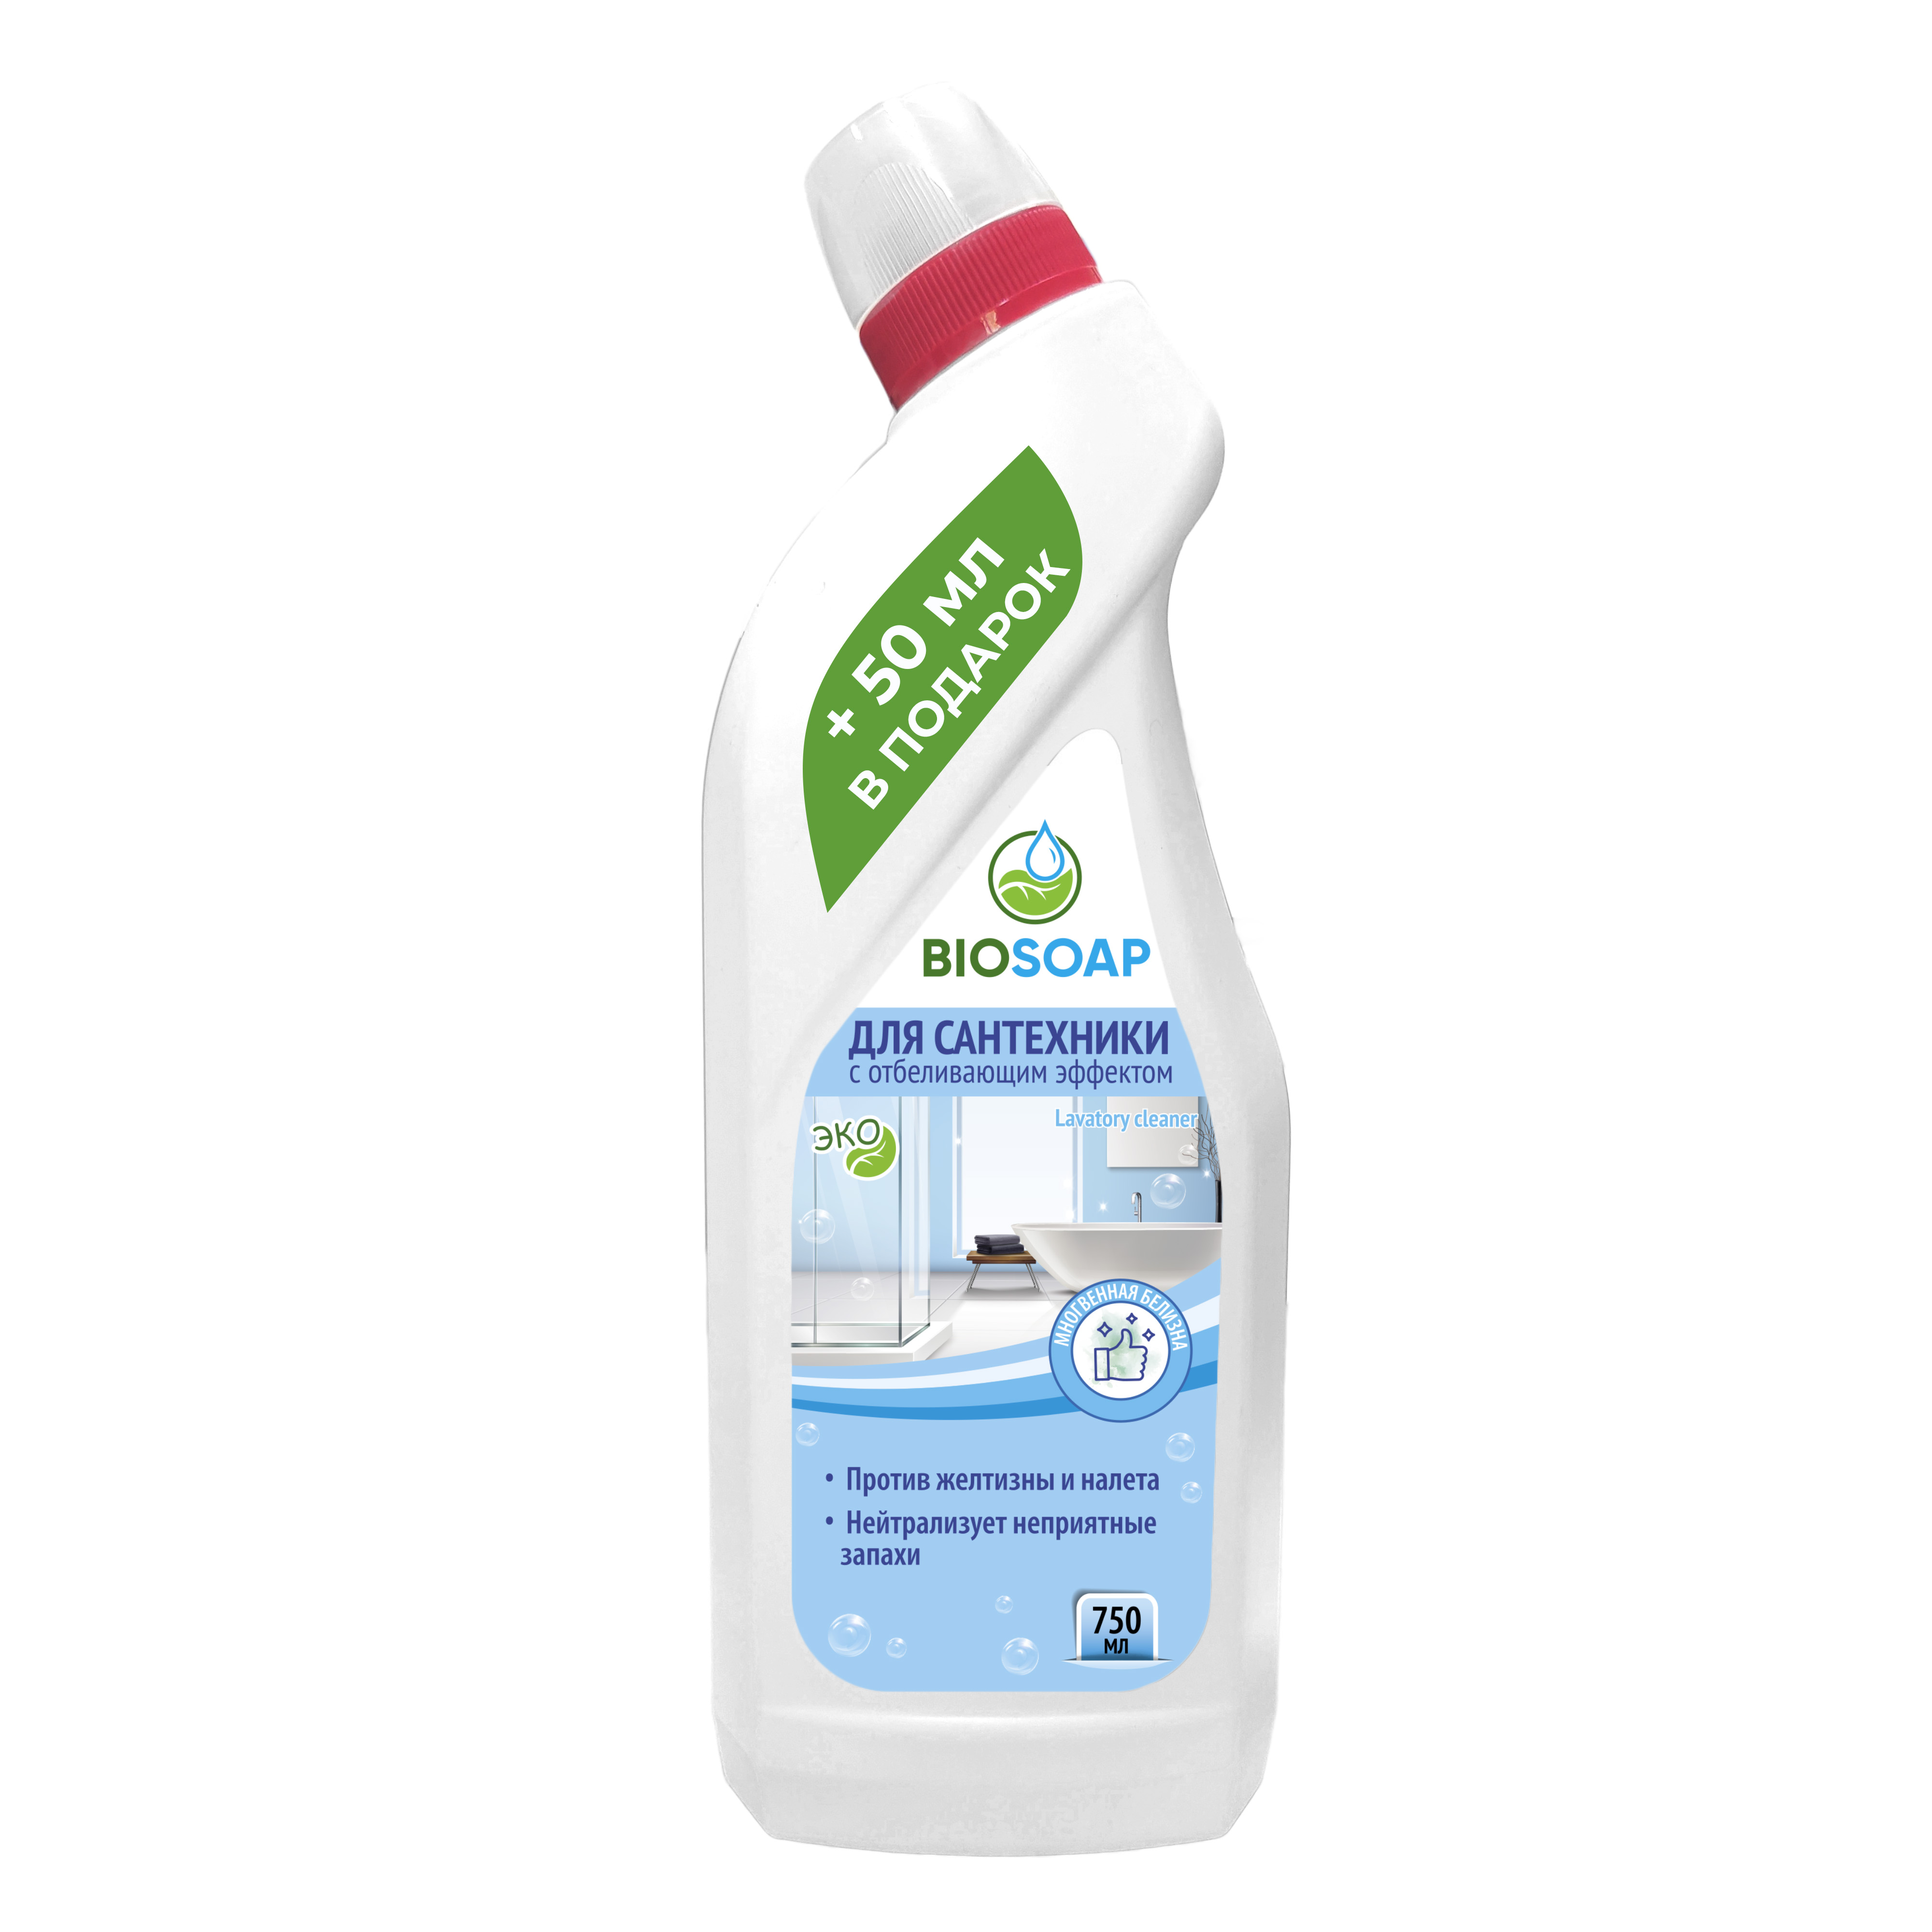 Средство для сантехники Biosoap с отбеливающим эффектом 750 мл средство для ежедневной чистки сантехники pro brite